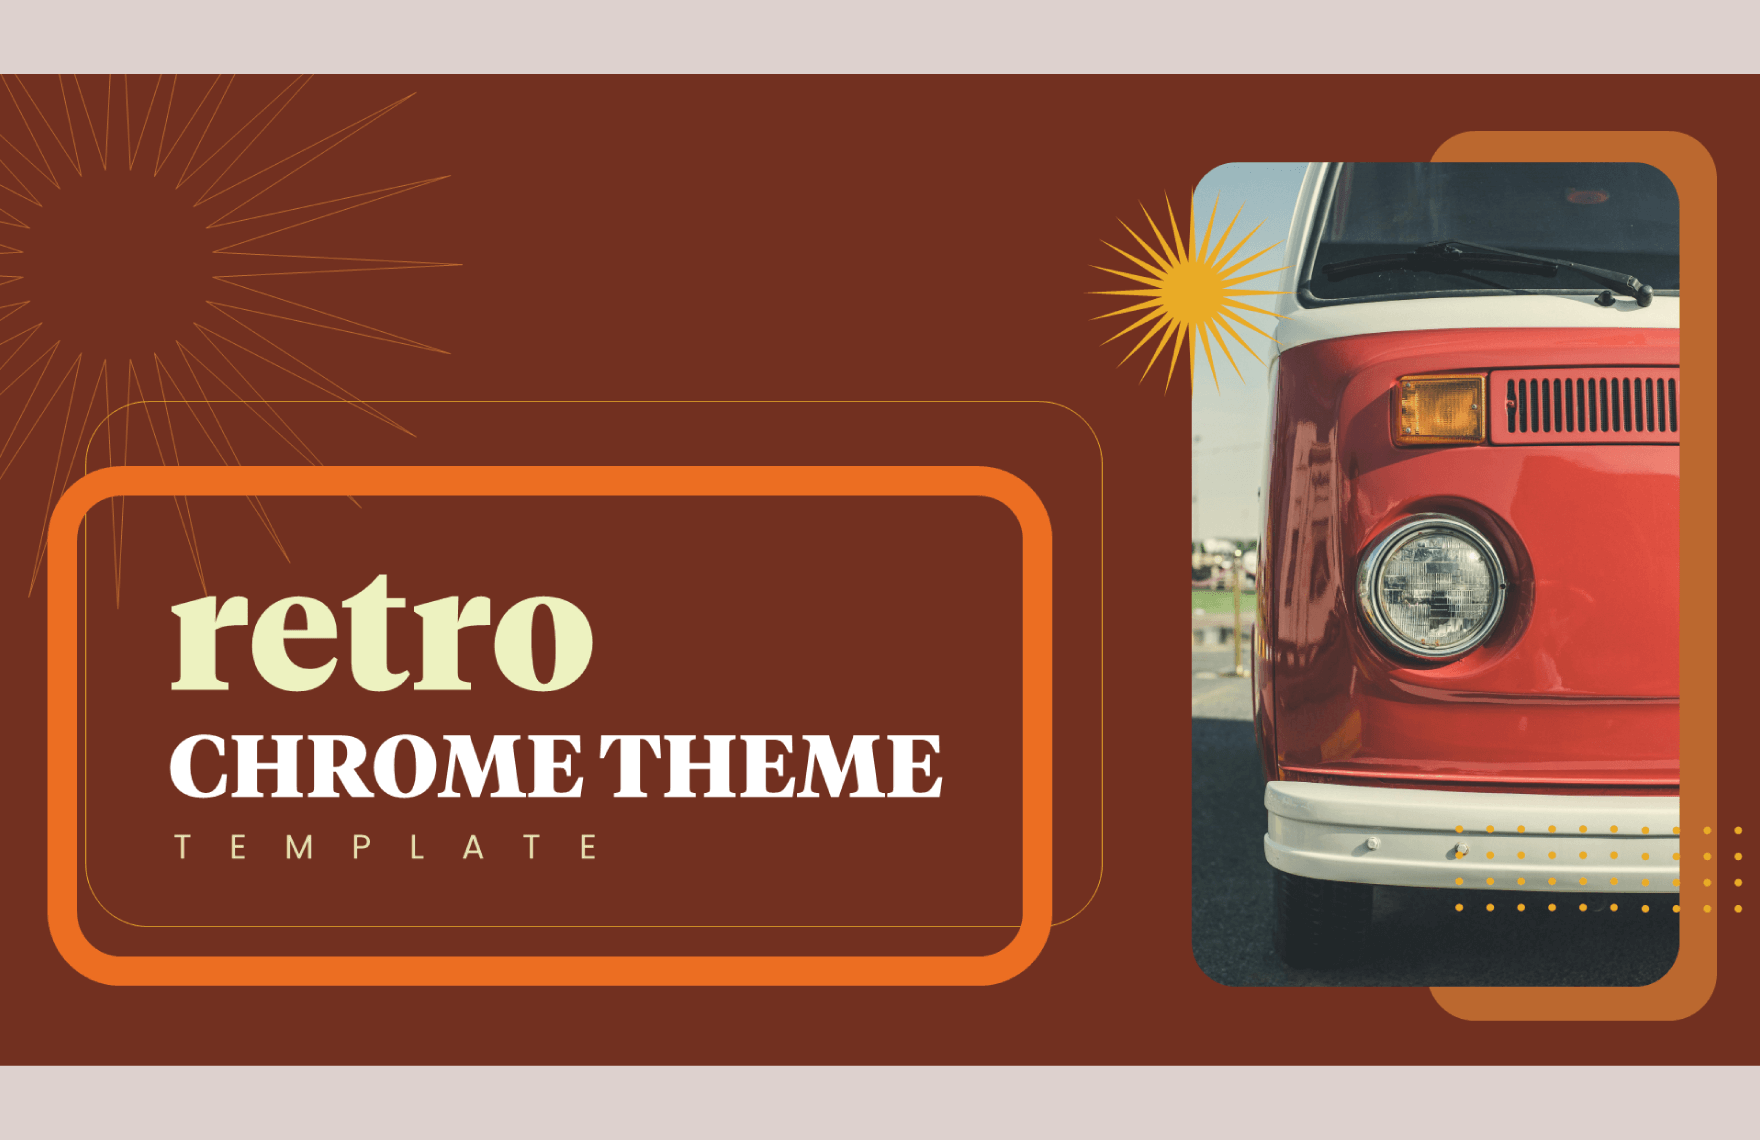 Retro Chrome Themes Template